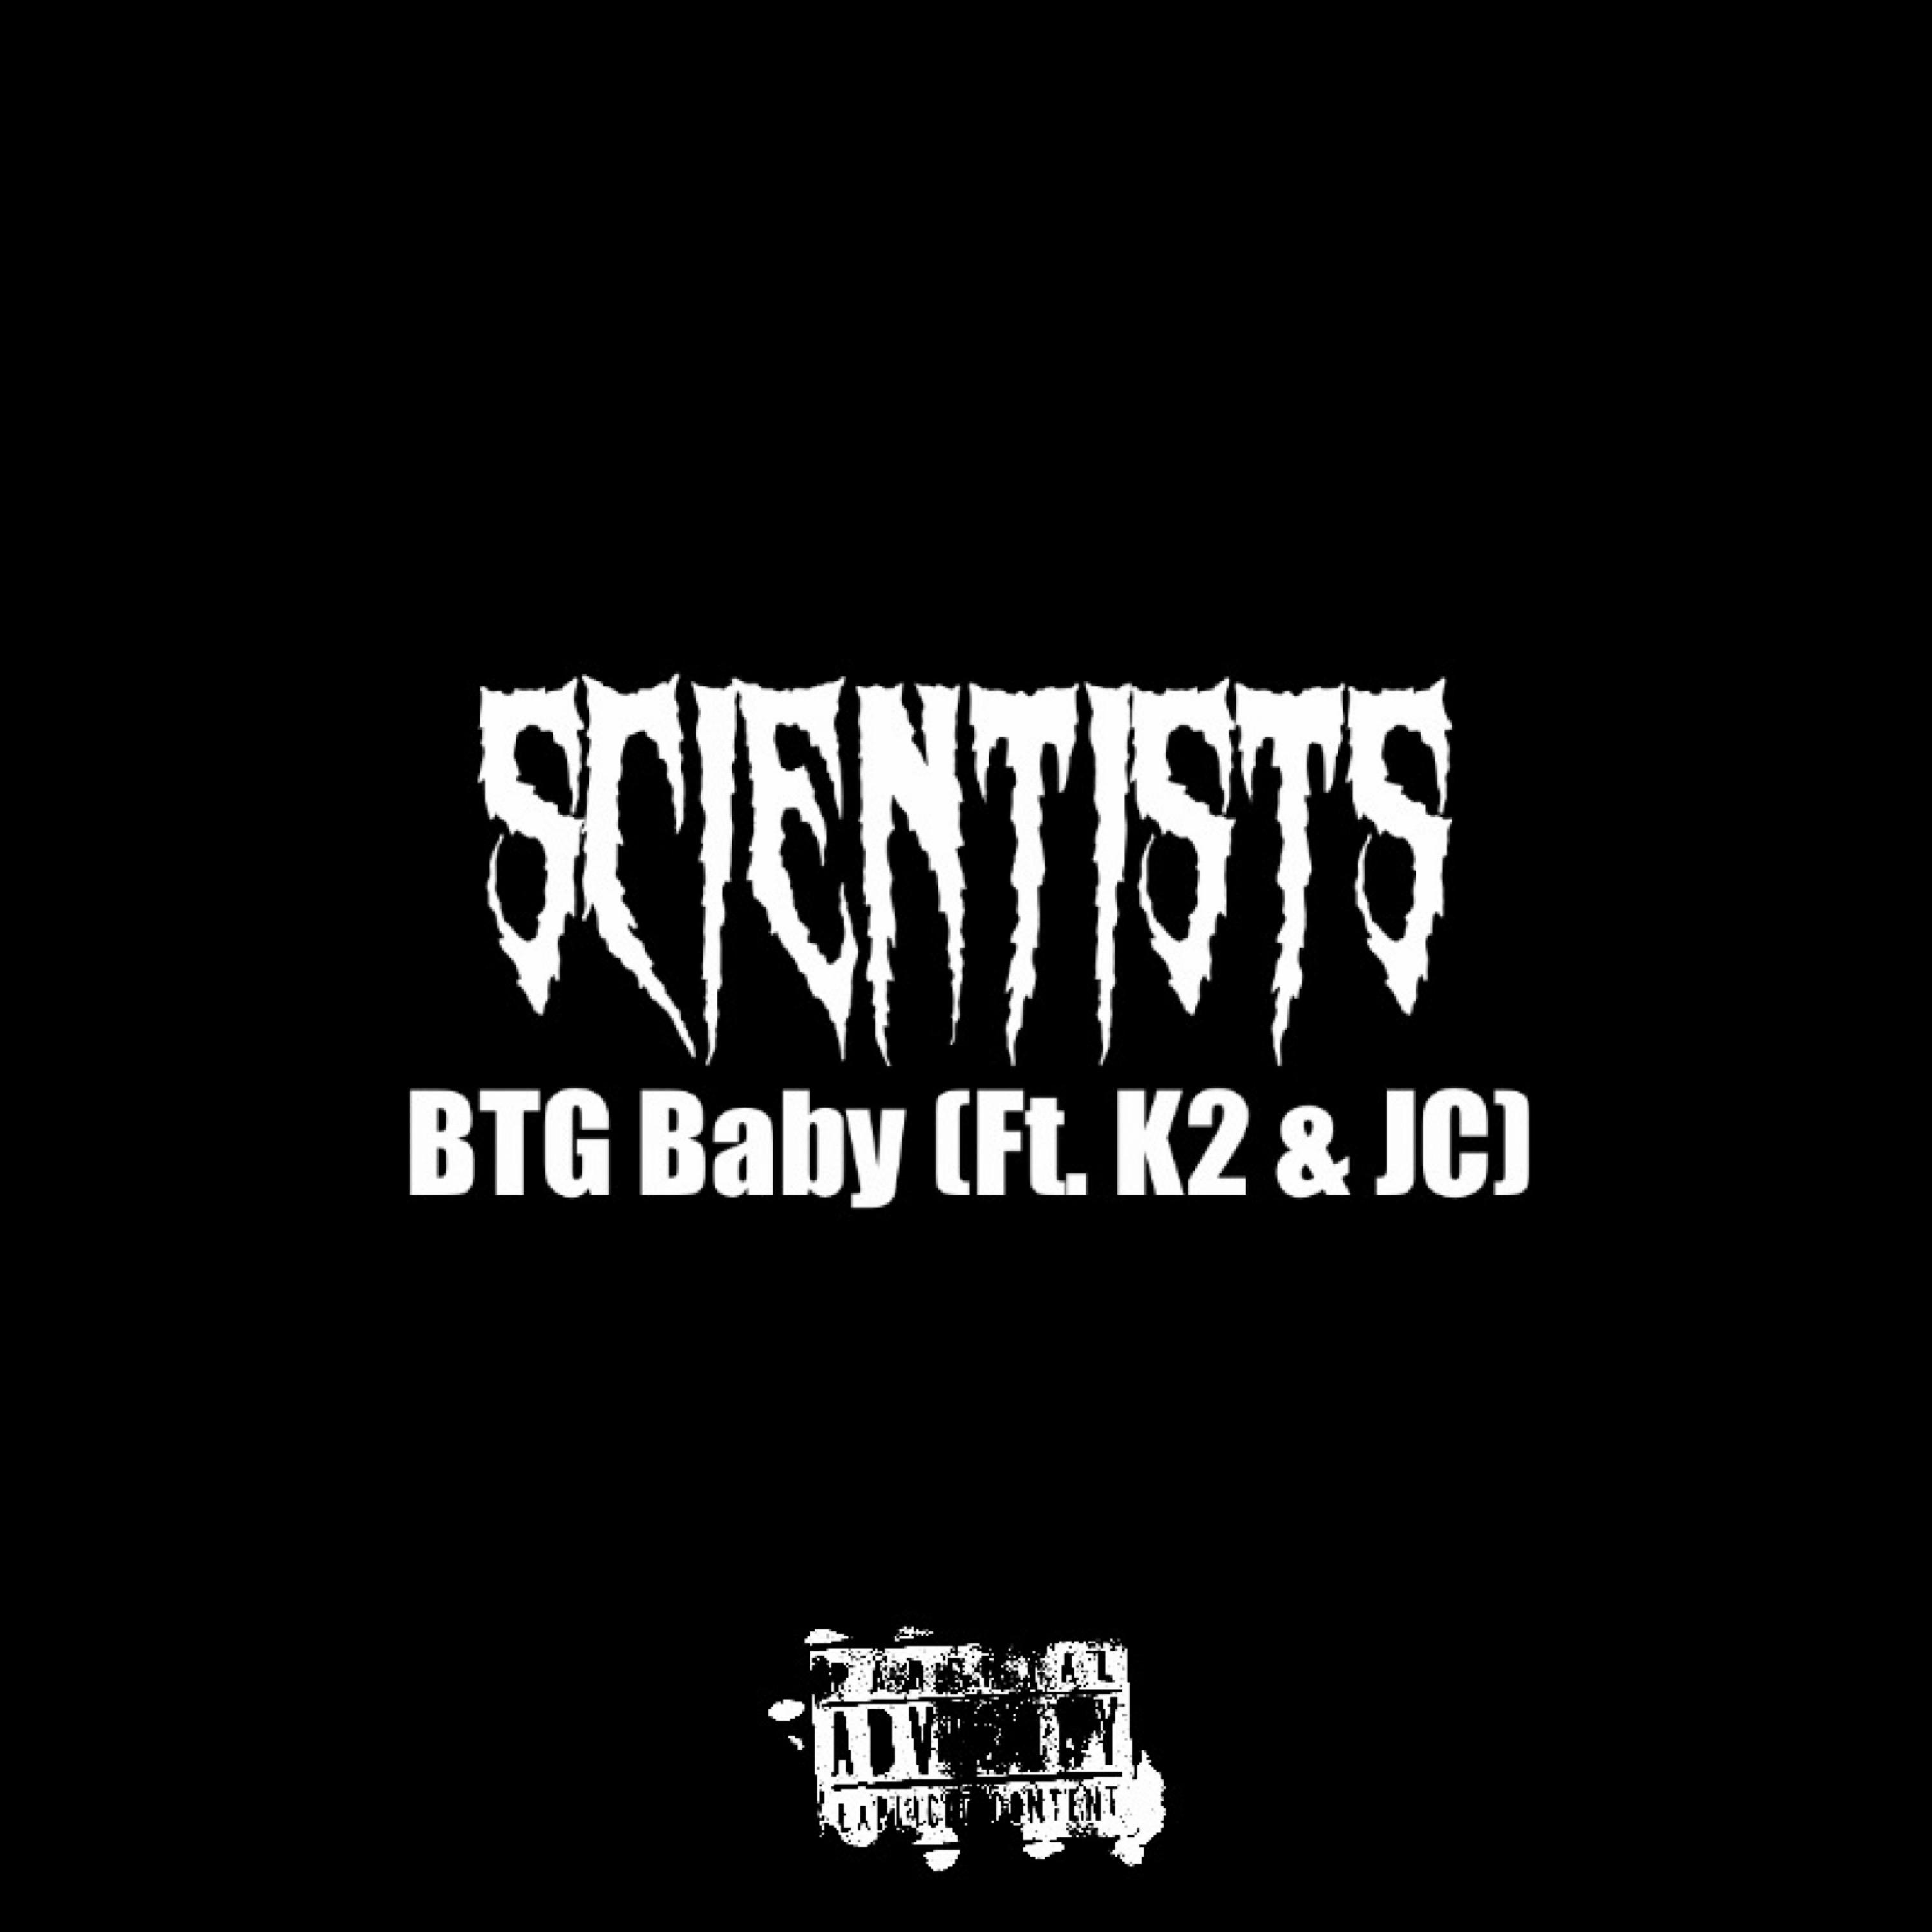 BTG Baby - Scientists